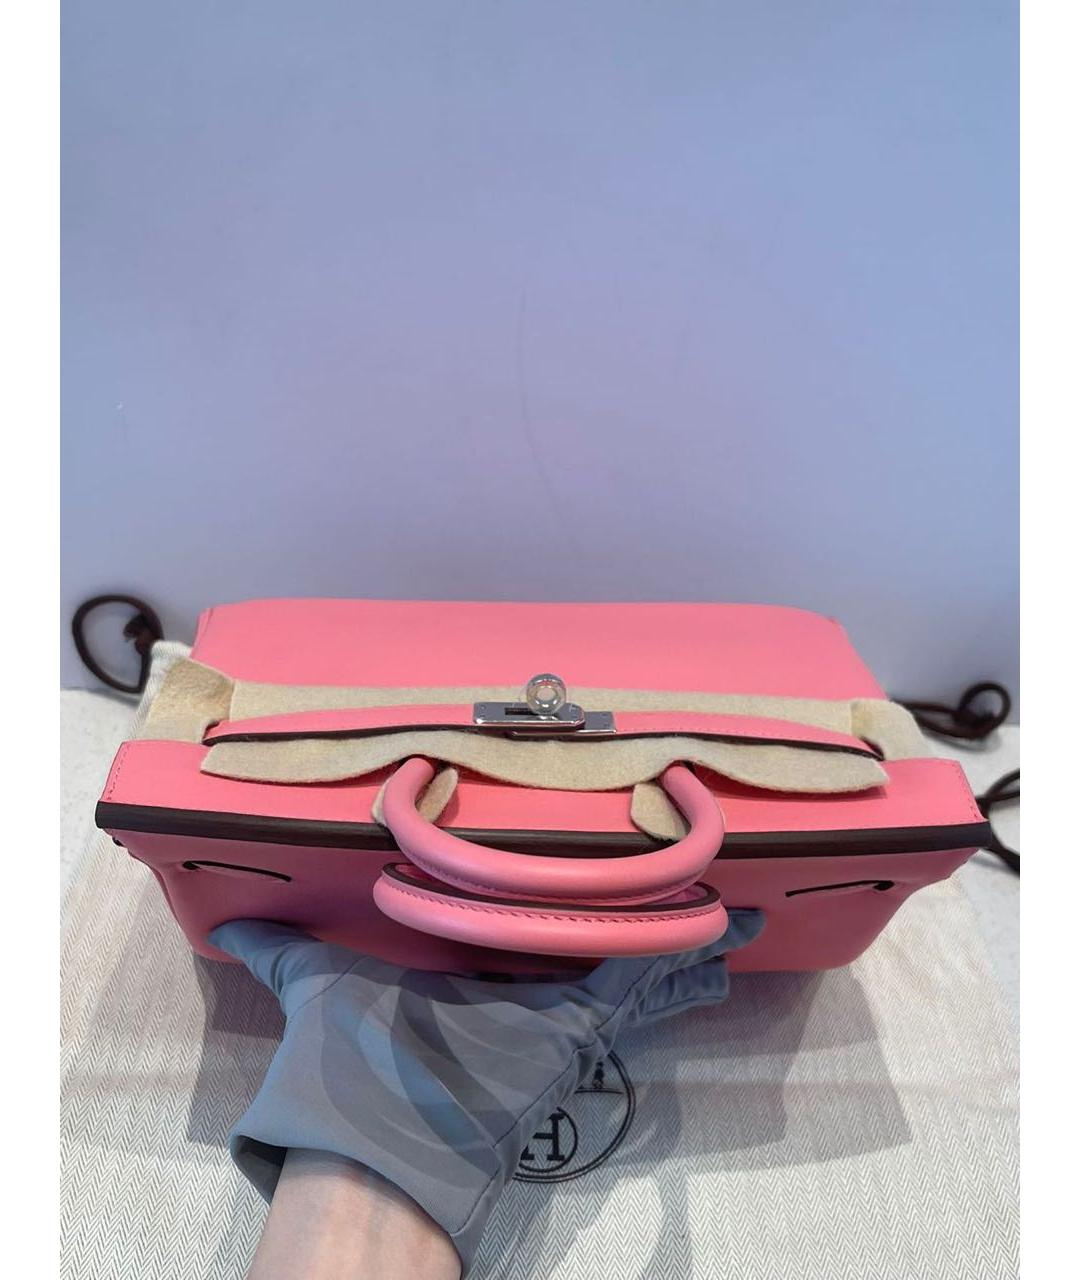 HERMES Розовая кожаная сумка с короткими ручками, фото 4